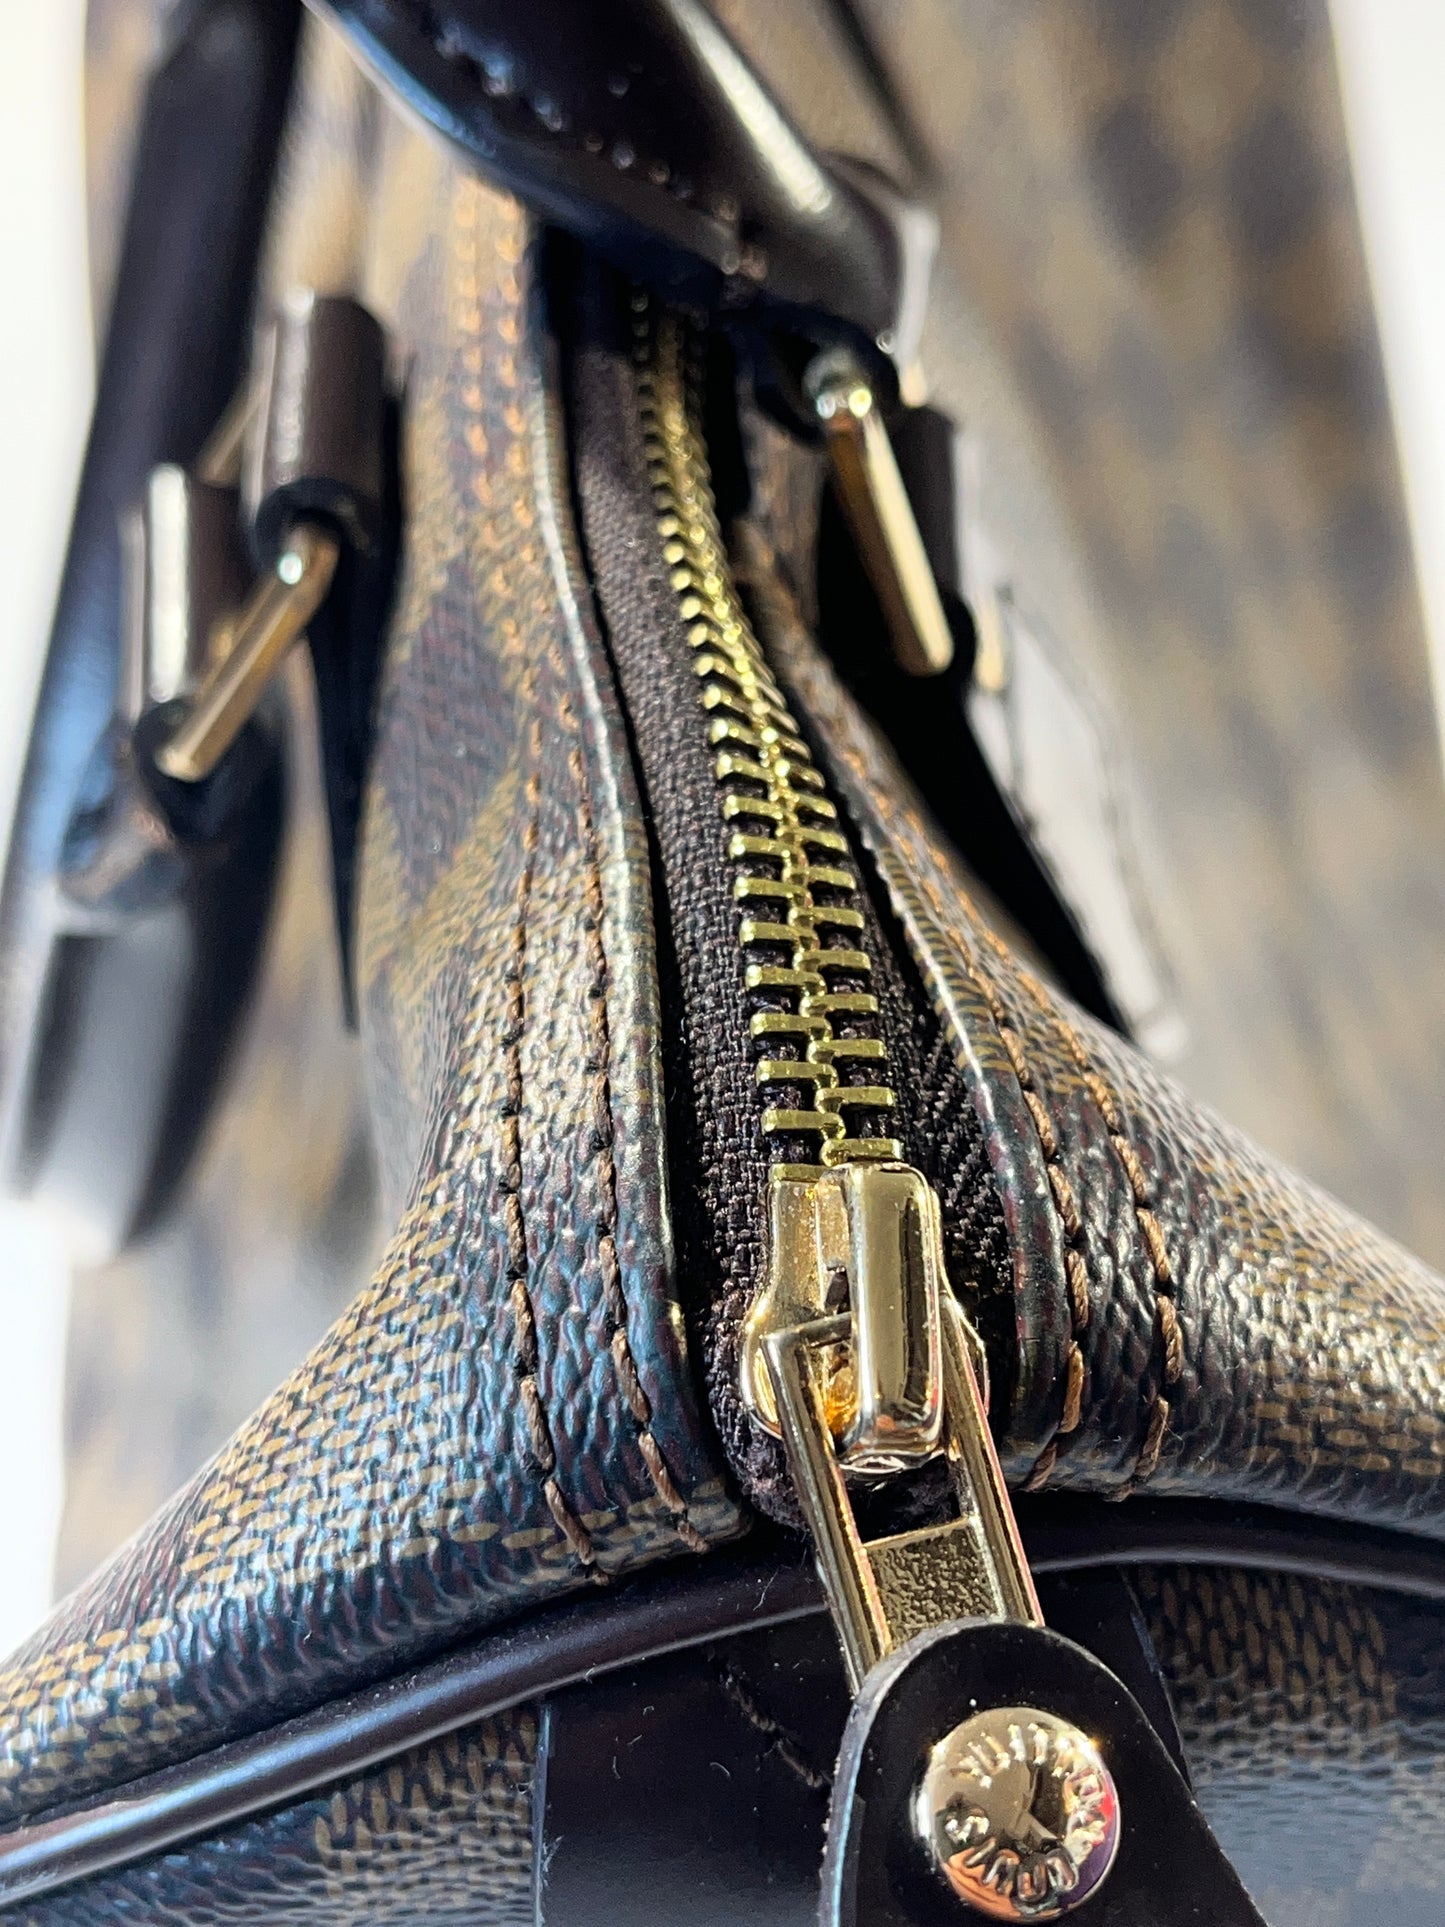 Vintage Louis Vuitton Hand Bag